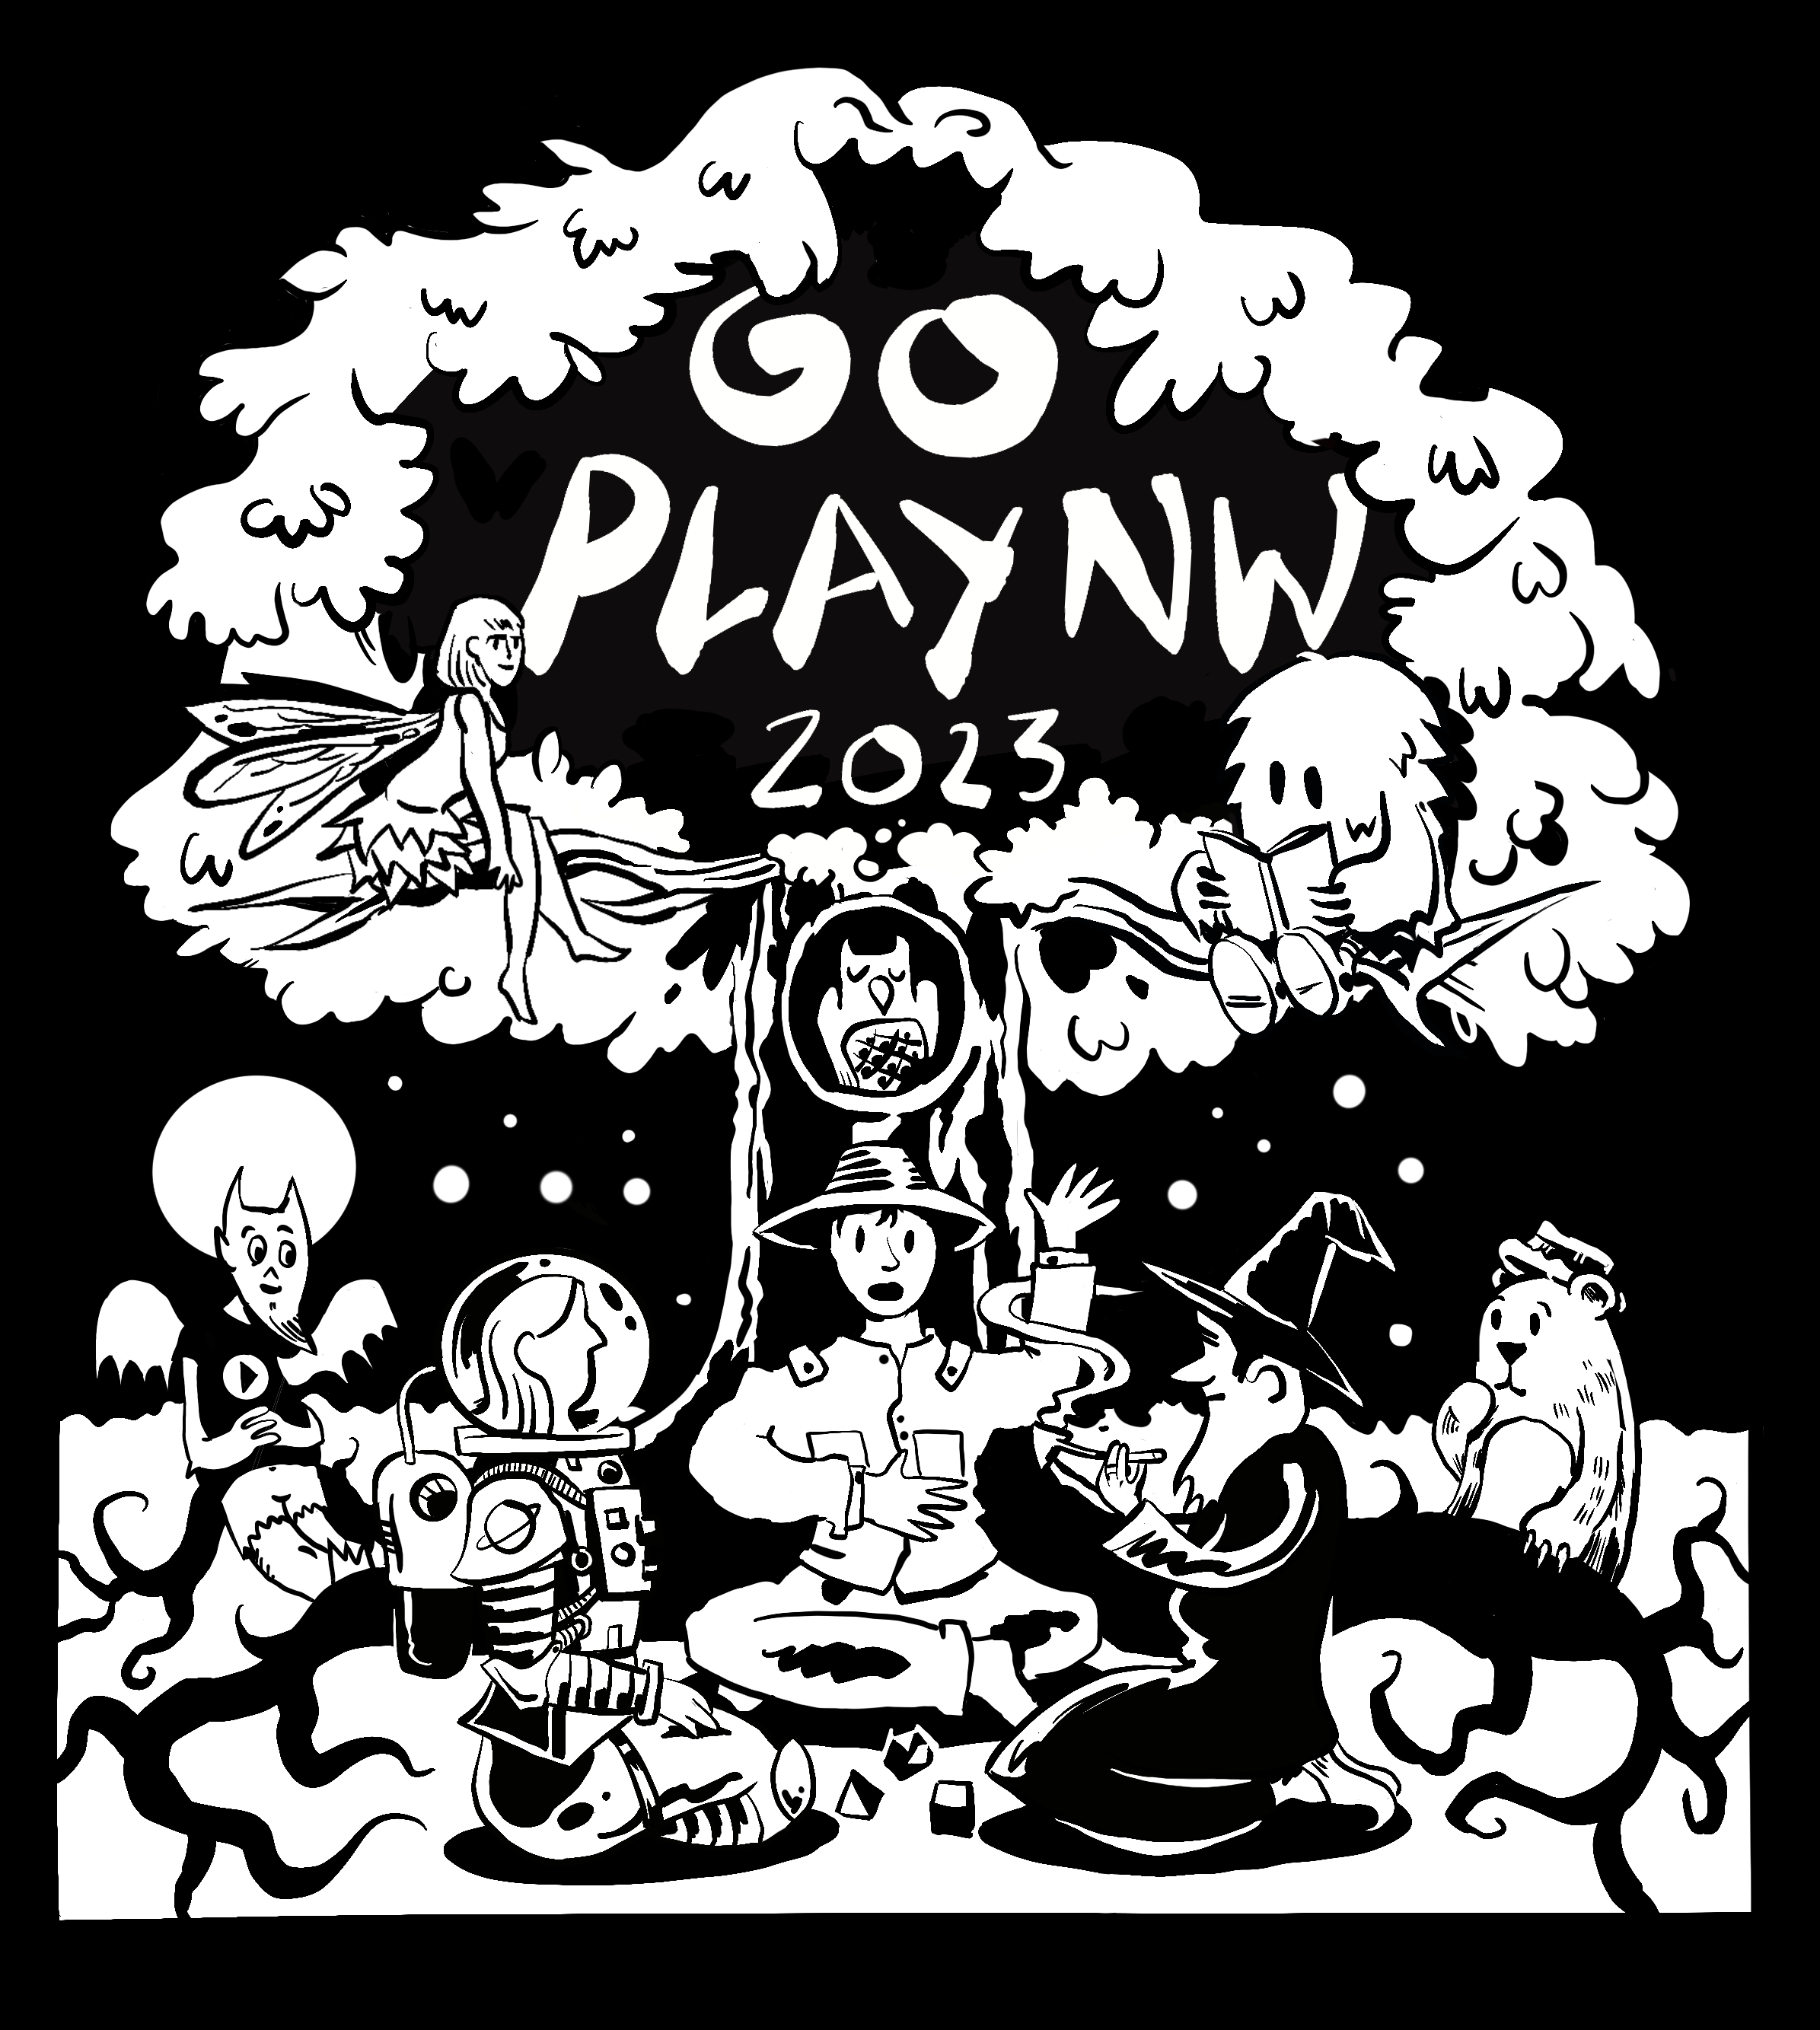 Go Play NW 2023 shirt design